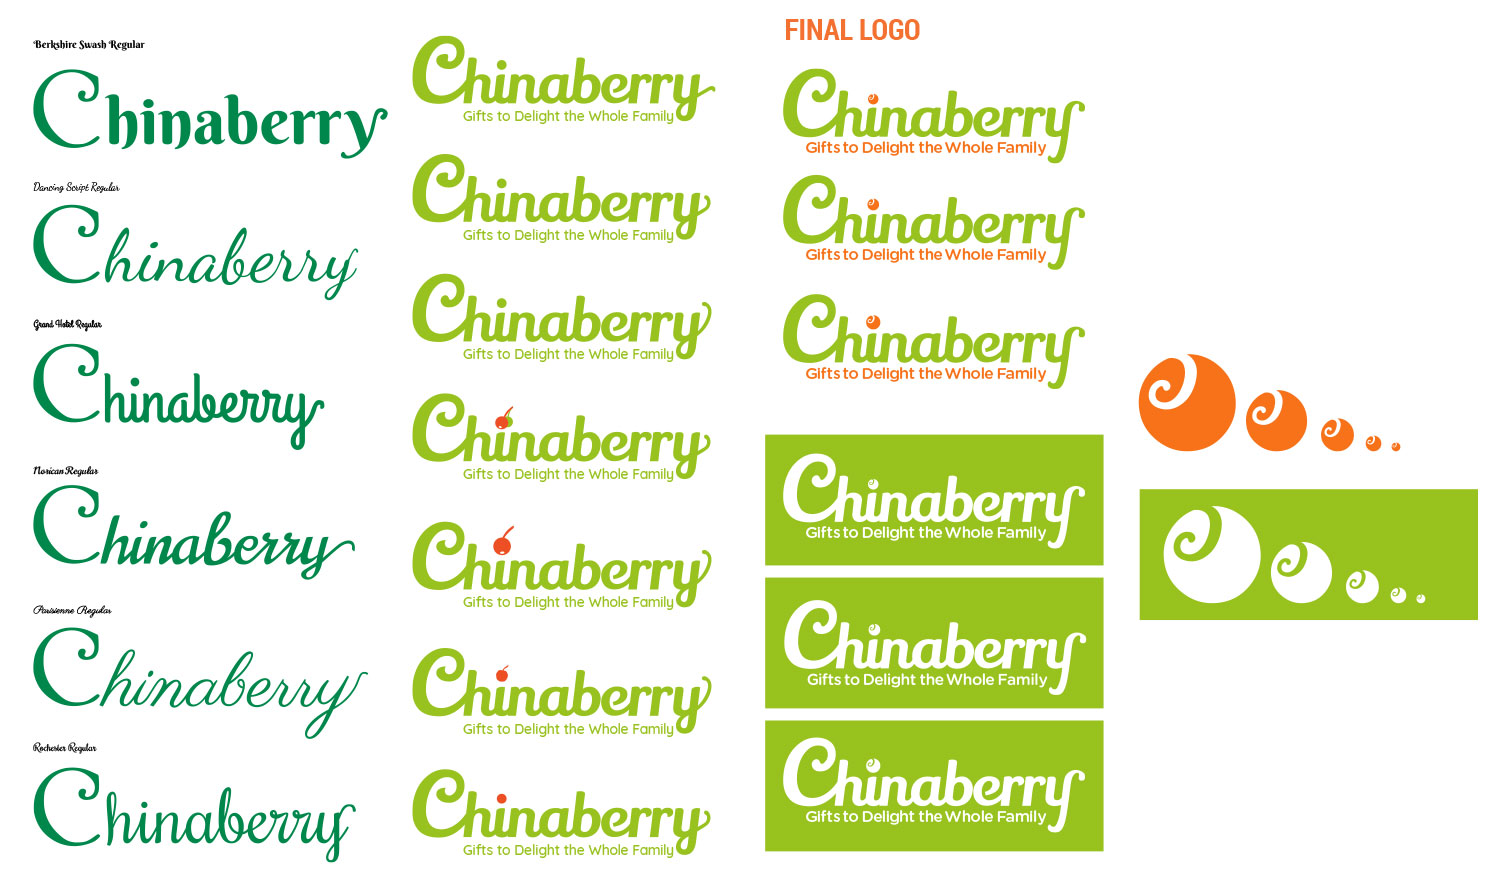 Chinaberry Logo Development Process